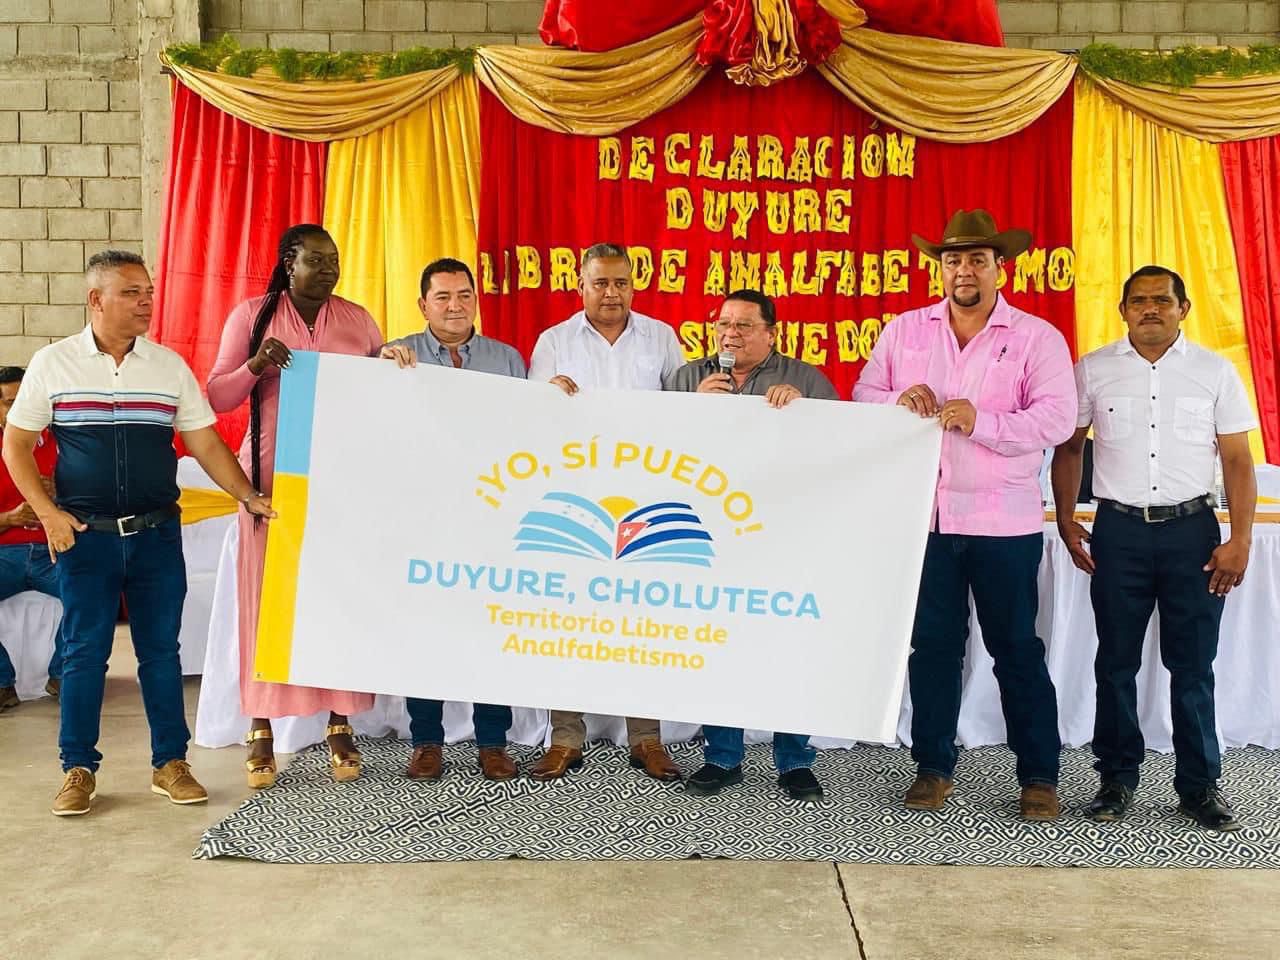 Duyure en el departamento de Choluteca fue declarado municipio libre de analfabetismo.